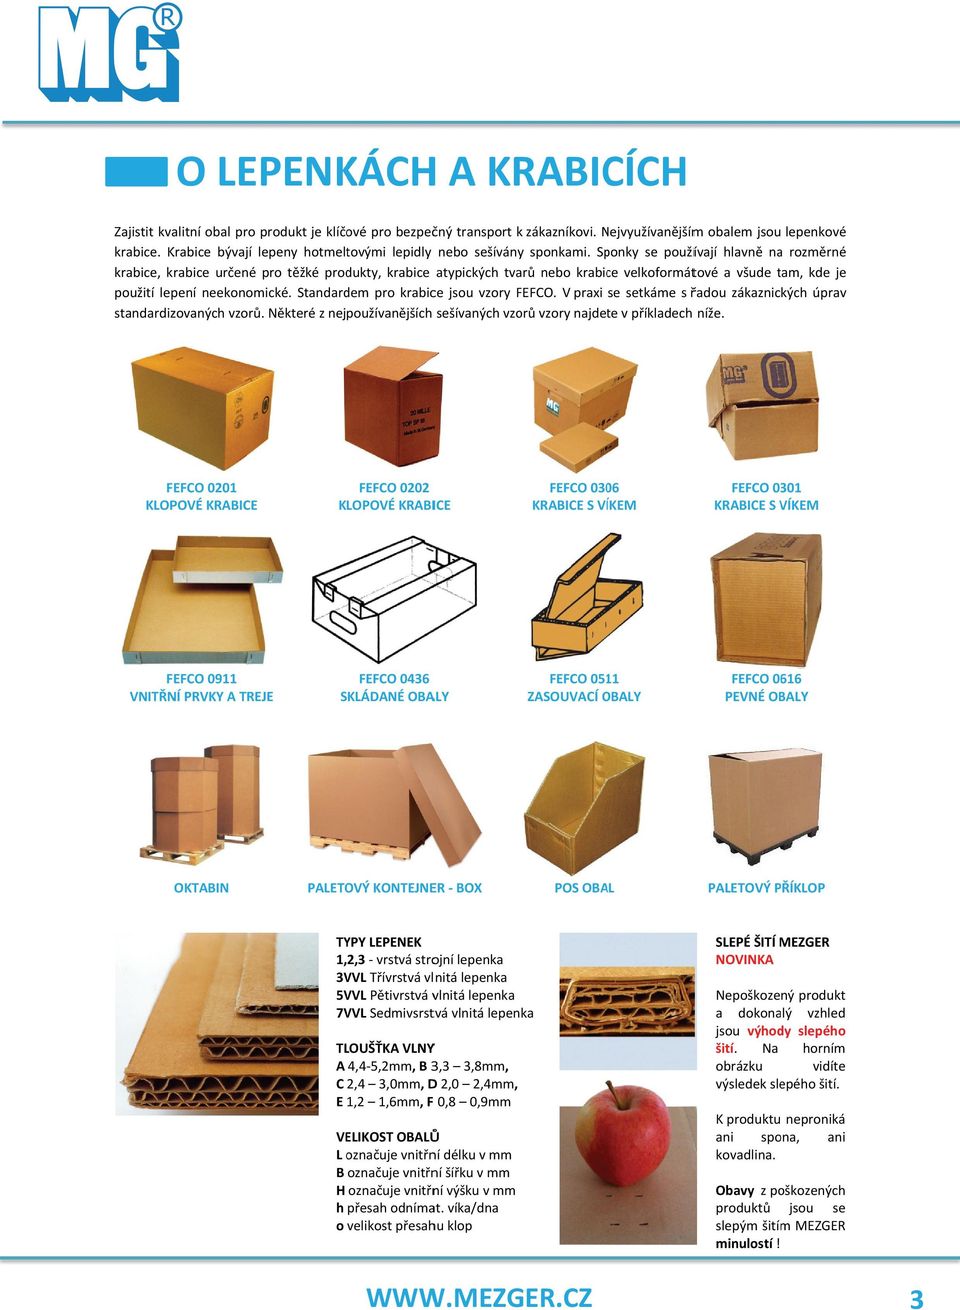 Sponky se používají hlavně naa rozměrné krabice, krabice určené pro těžké produkty, krabice atypických tvarů nebo krabice velkoformátové a všude tam, kde je použití lepení neekonomické.